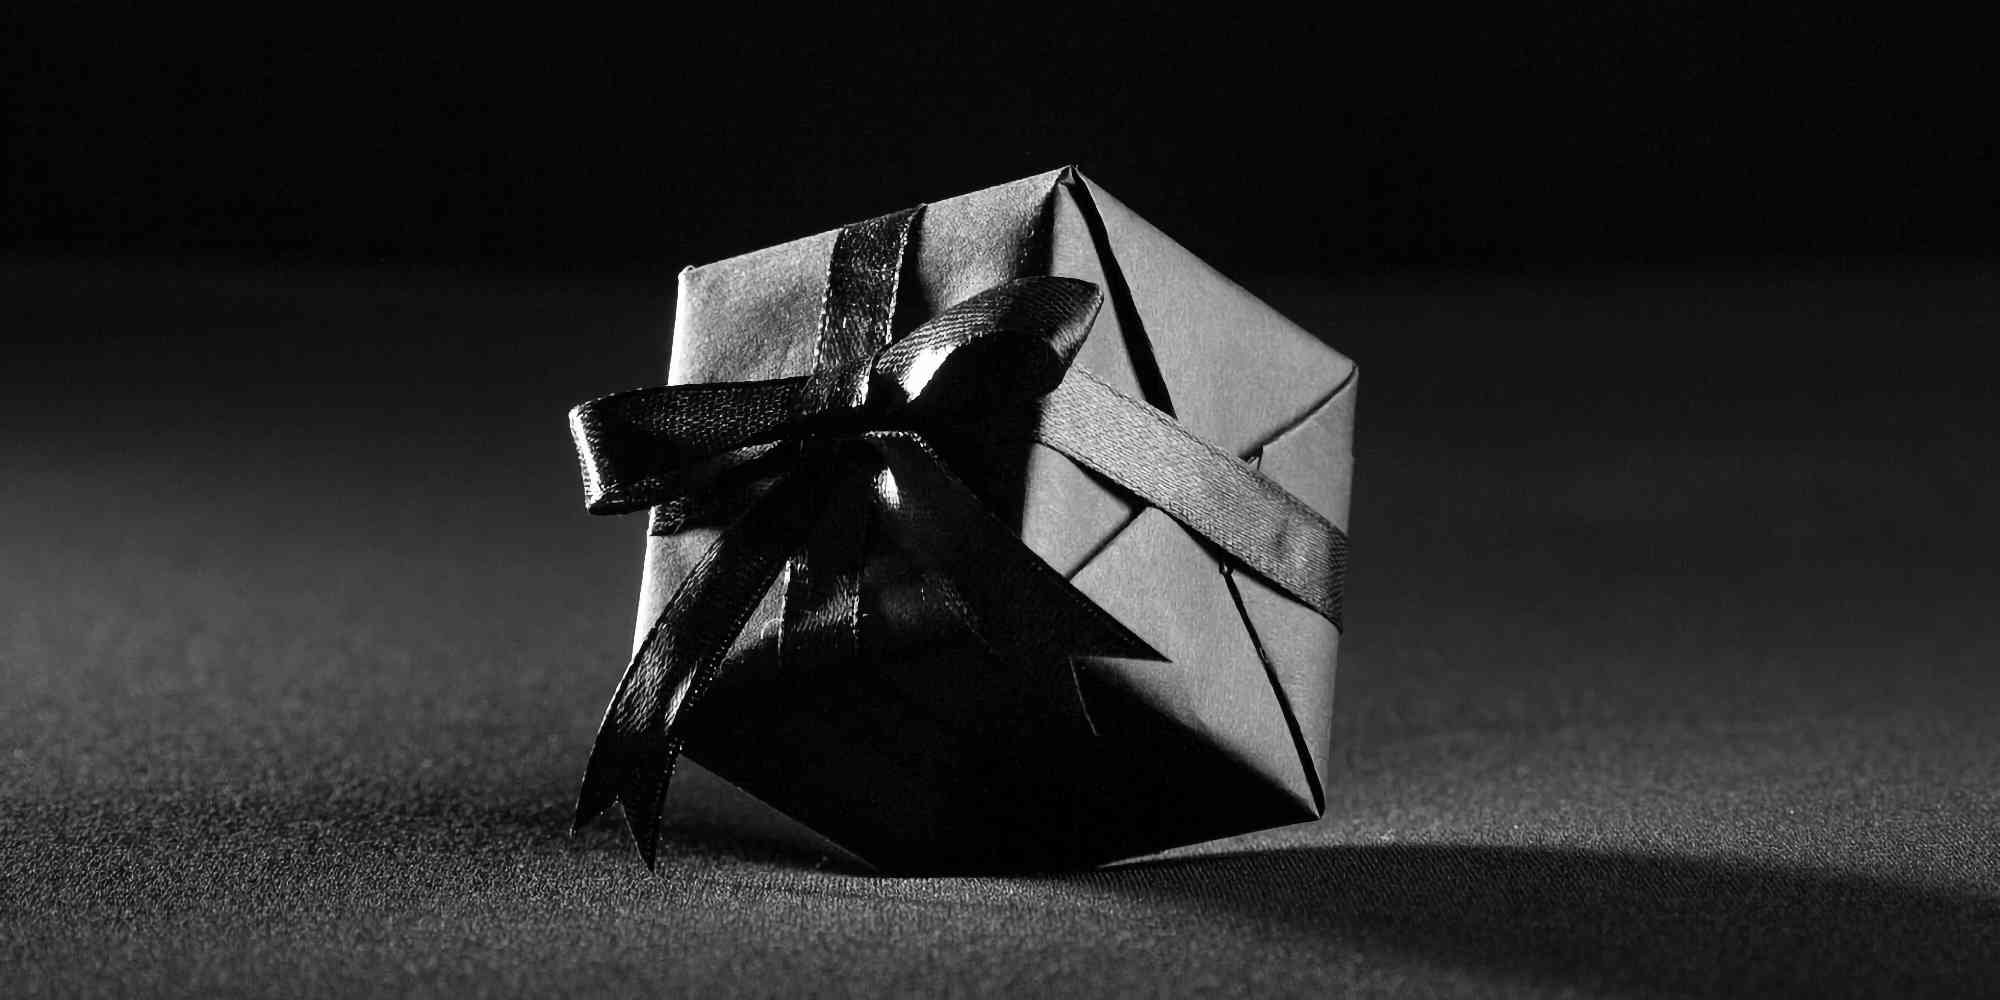 黑色盒子，绑着一条黑丝带。它静静地躺在黑色的背景上，似乎被遗忘了。它散发着神秘的气息，让人不禁想要靠近去探寻它的内心。它或许有着令人难以捉摸的故事，或者只是一个简单的礼物，但它却承载着一份情感和祝福。